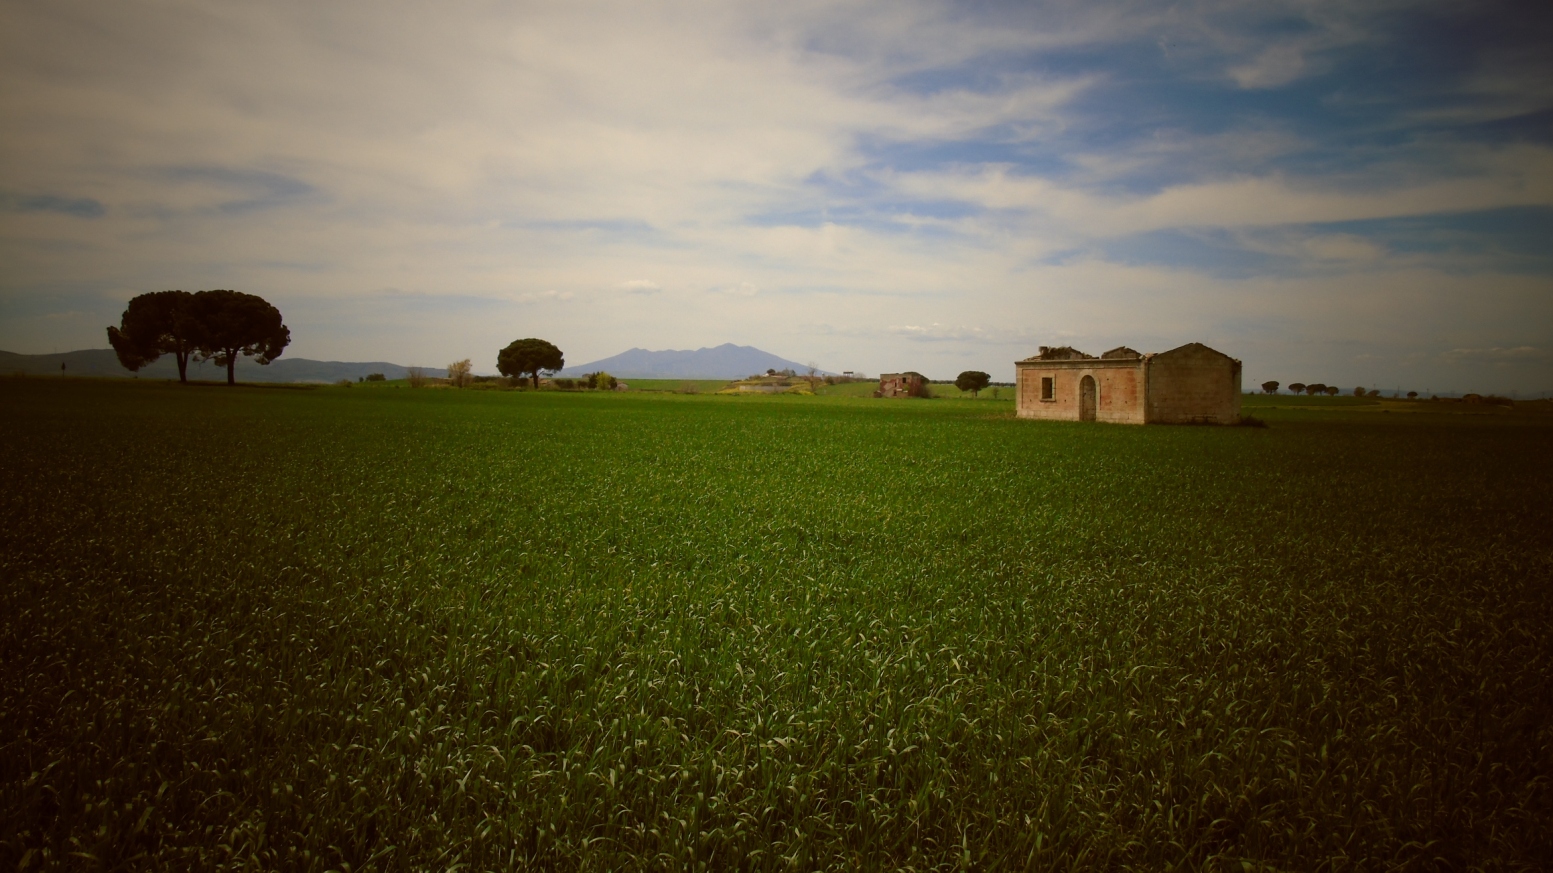 In agro di Venosa - Veduta dalla Bradanica img. 1

